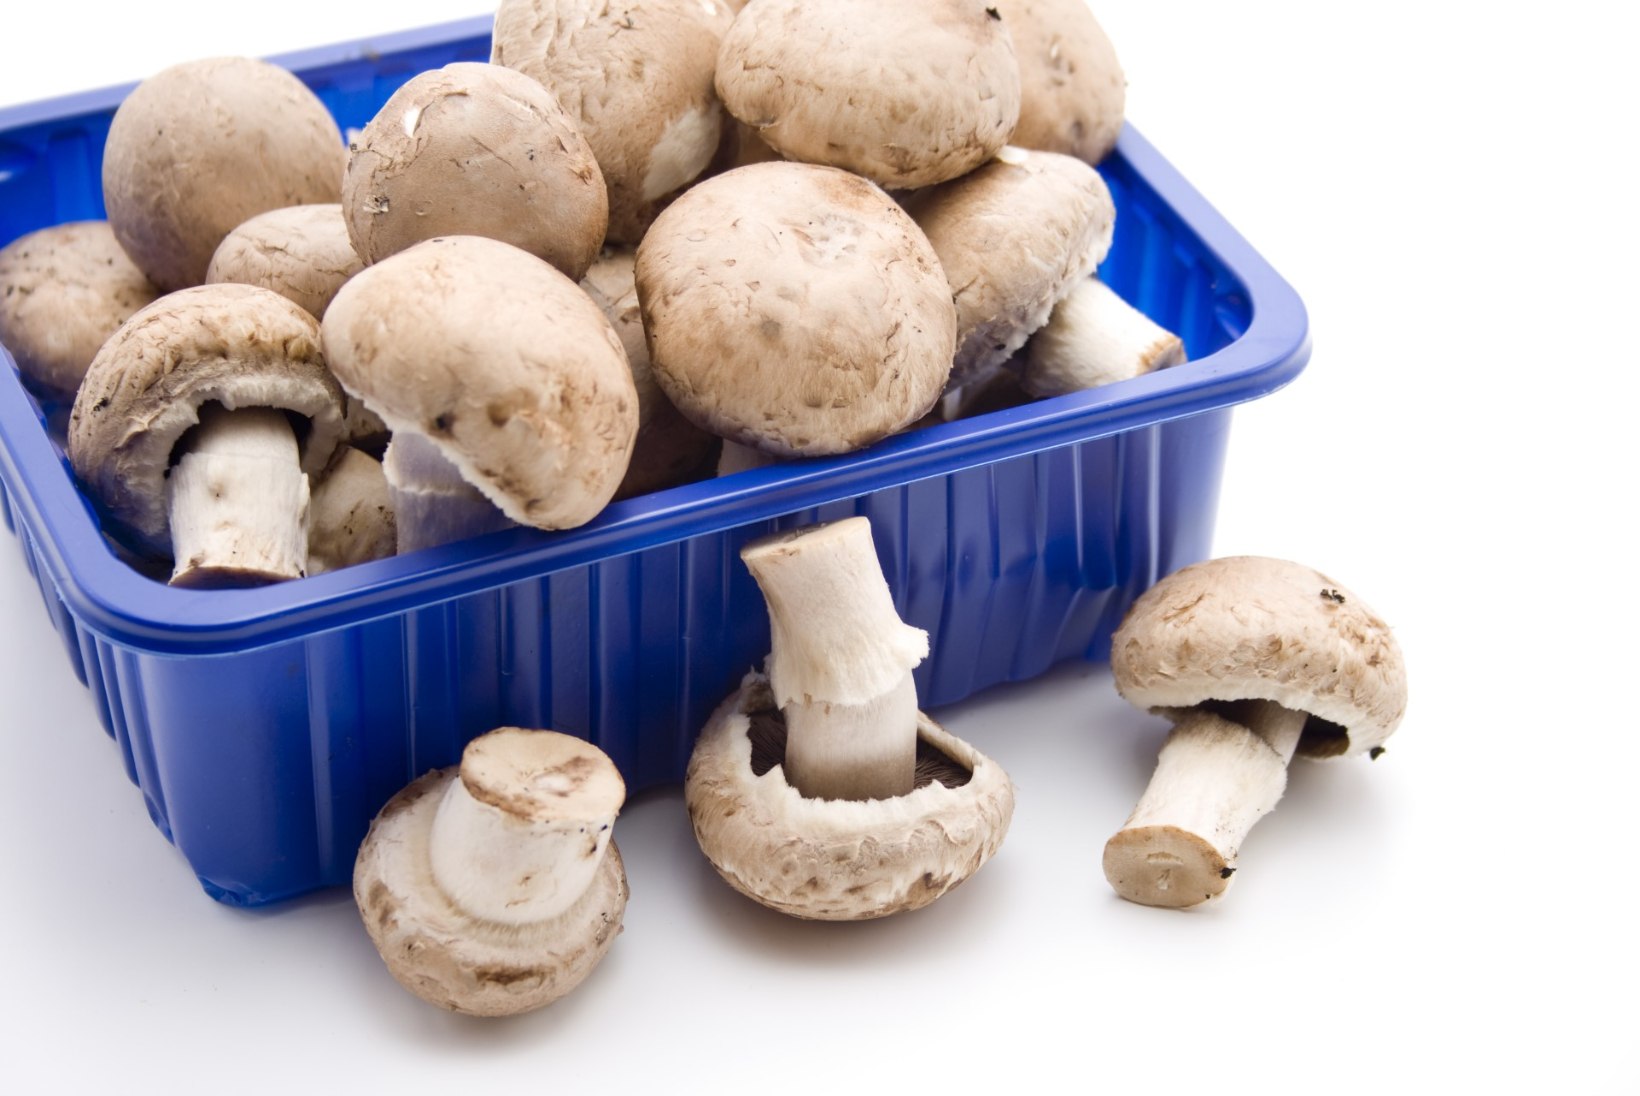 PANE TÄHELE | Kuidas valida poes seeni ja hoida neid kodus külmikus kauem värskena